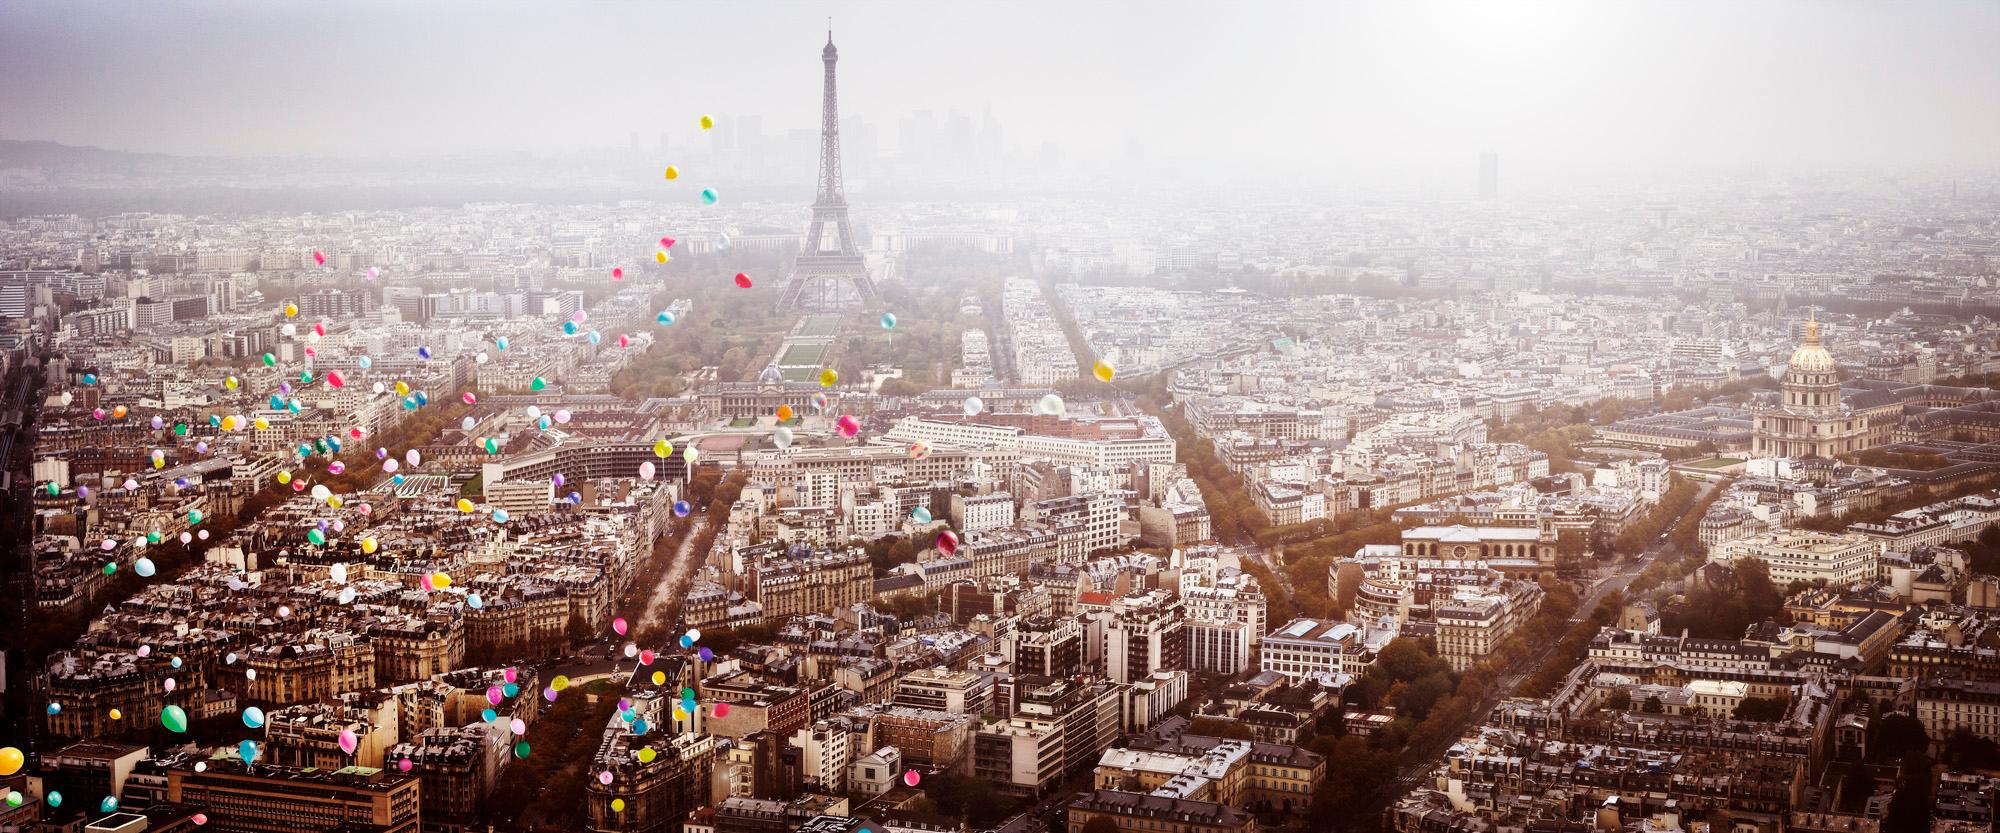 Ballonschirme über Paris  – Photograph von David Drebin